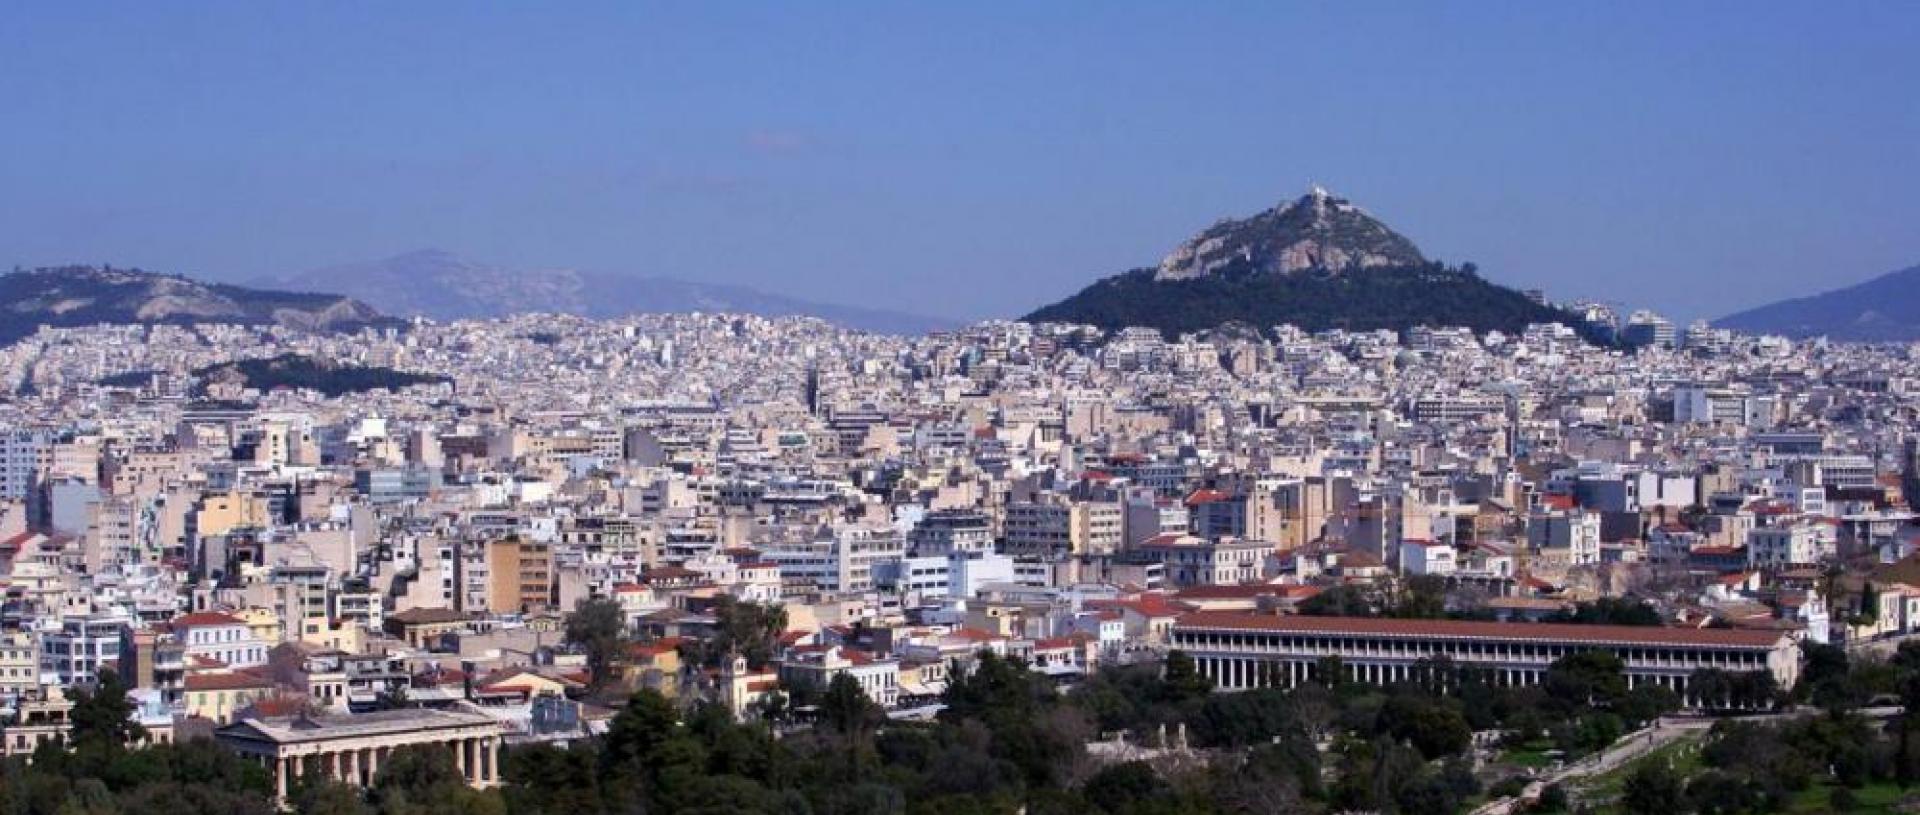 Οι αναπλάσεις που έρχονται για να αλλάξουν την Αθήνα